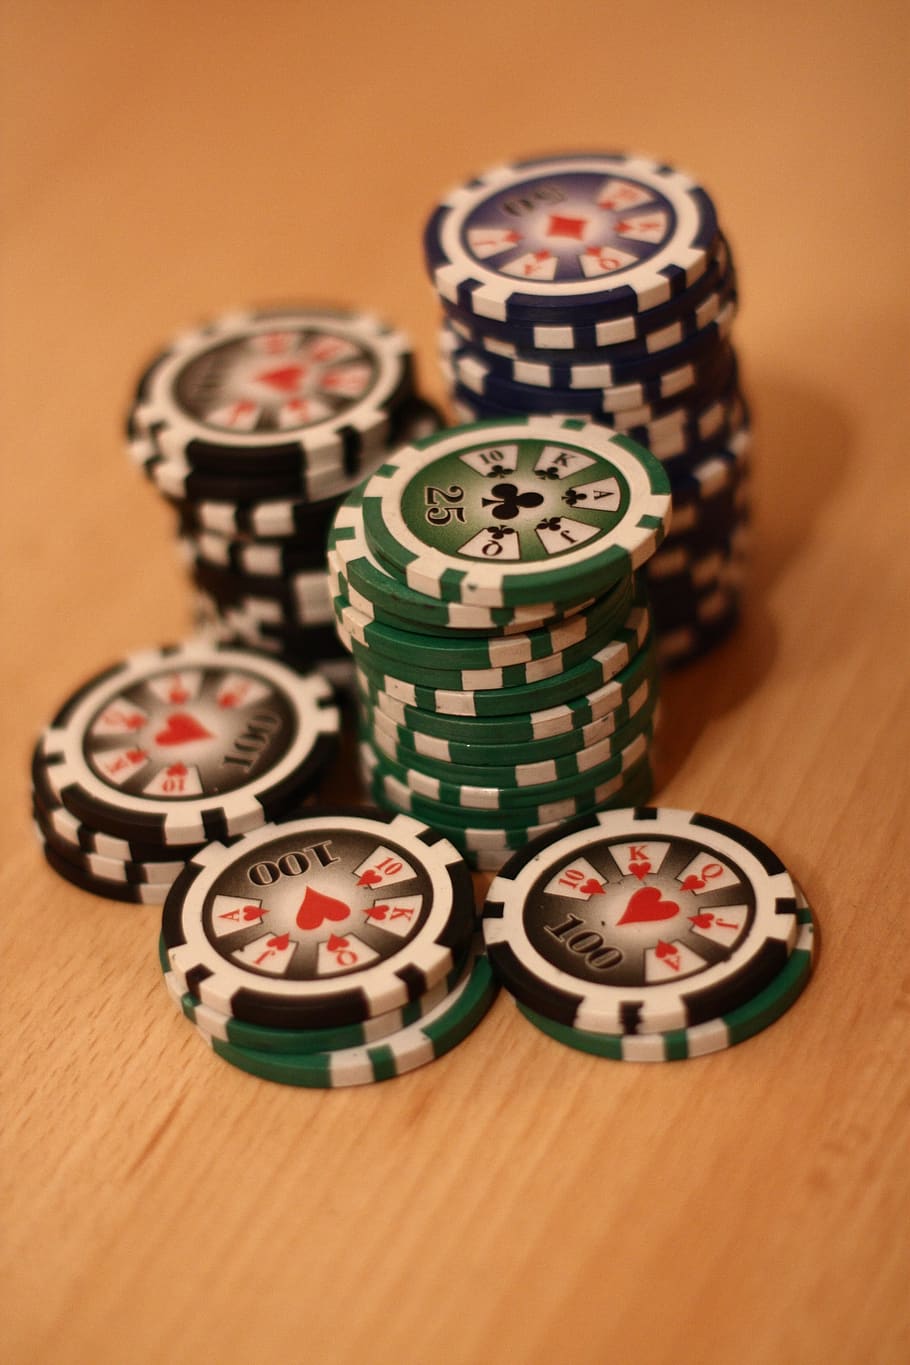 покер, фишка для покера, играть в покер, играть, азартные игры, выиграть, казино, карточная игра, риск, прибыль